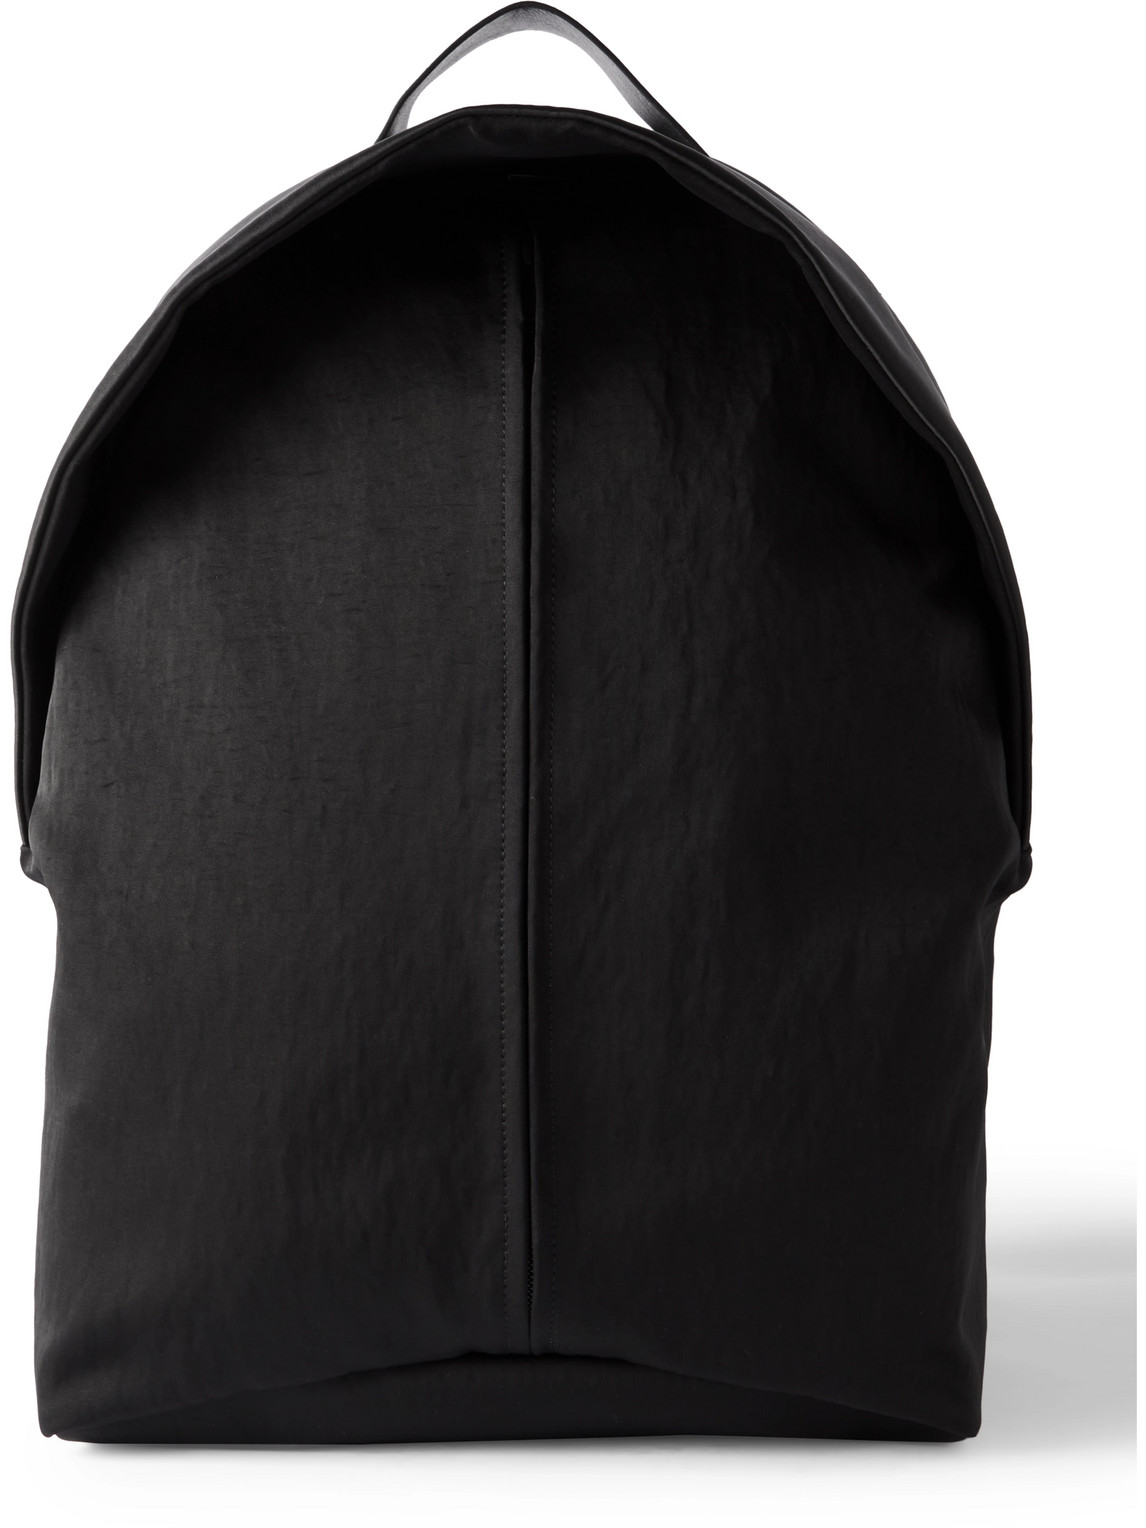 Full-Grain Leather-Trimmed Nylon Backpack